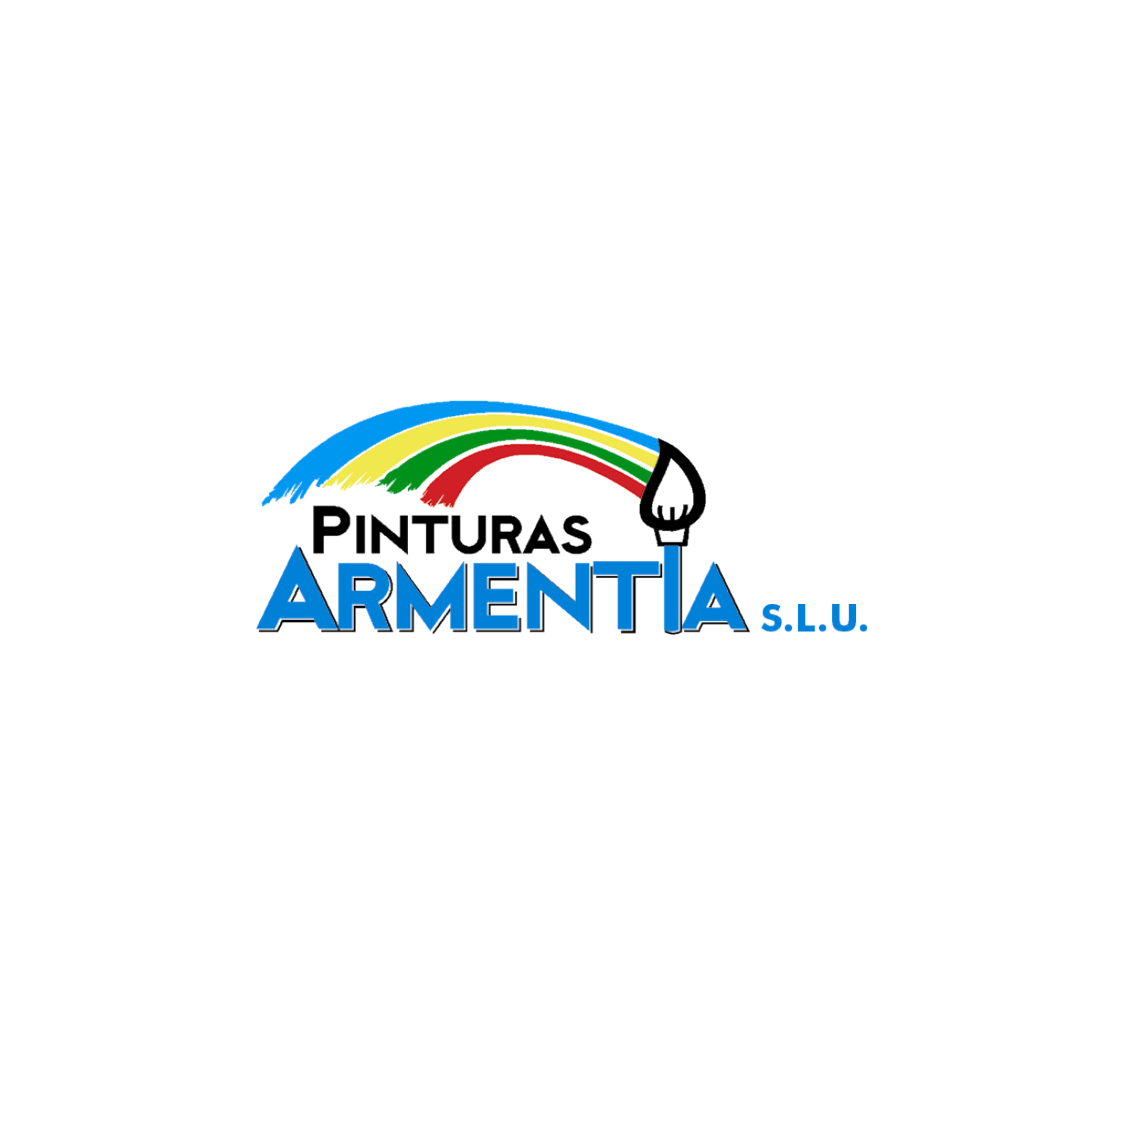 Pinturas Armentia S.L.U. Logo